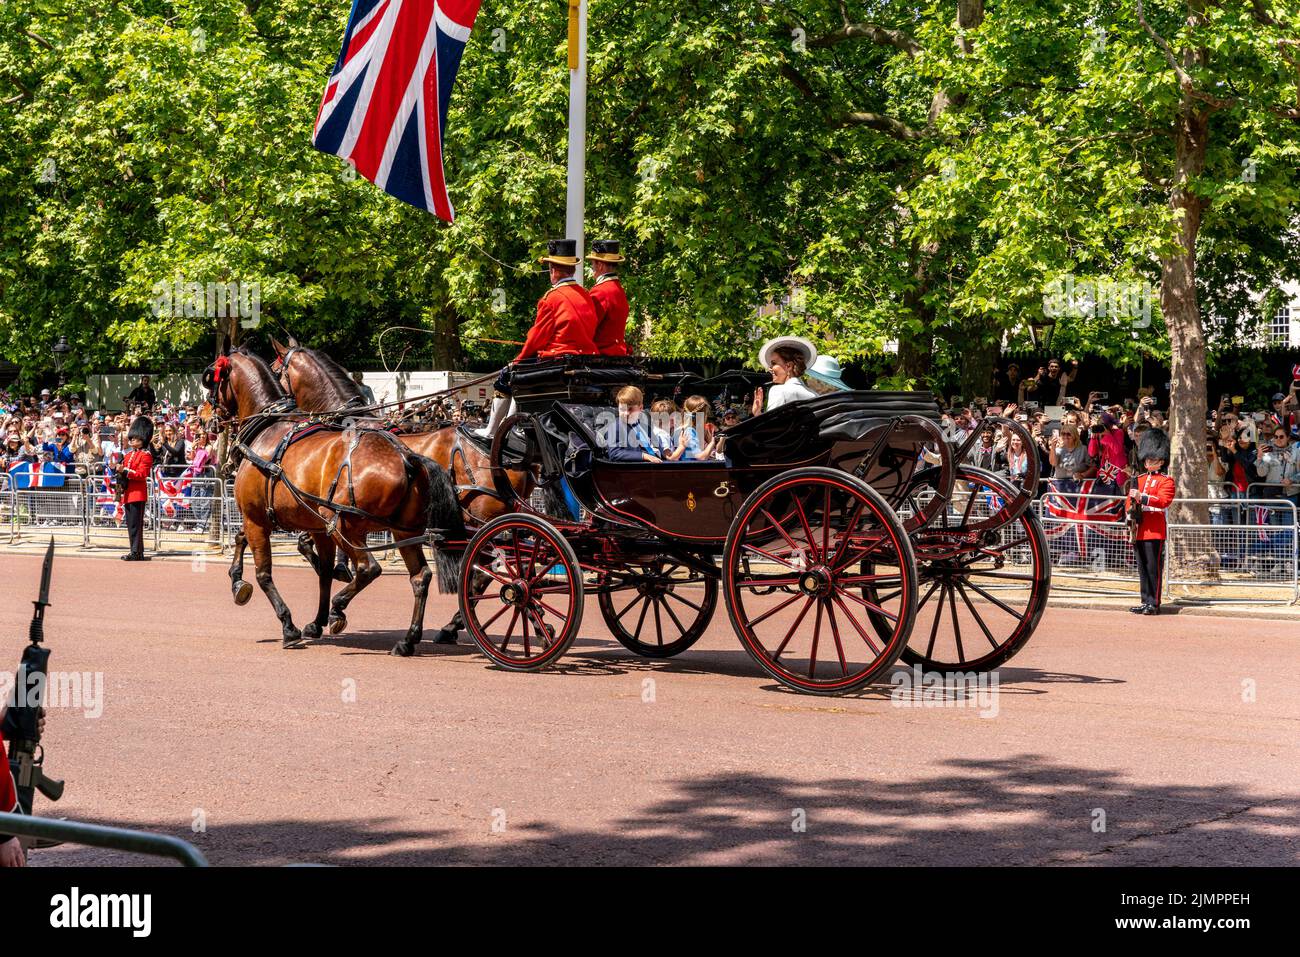 Los miembros de la familia real británica regresan a lo largo del centro comercial en un carruaje tirado por caballos después de asistir a la ceremonia de Trooping the Colour, Londres, Reino Unido. Foto de stock